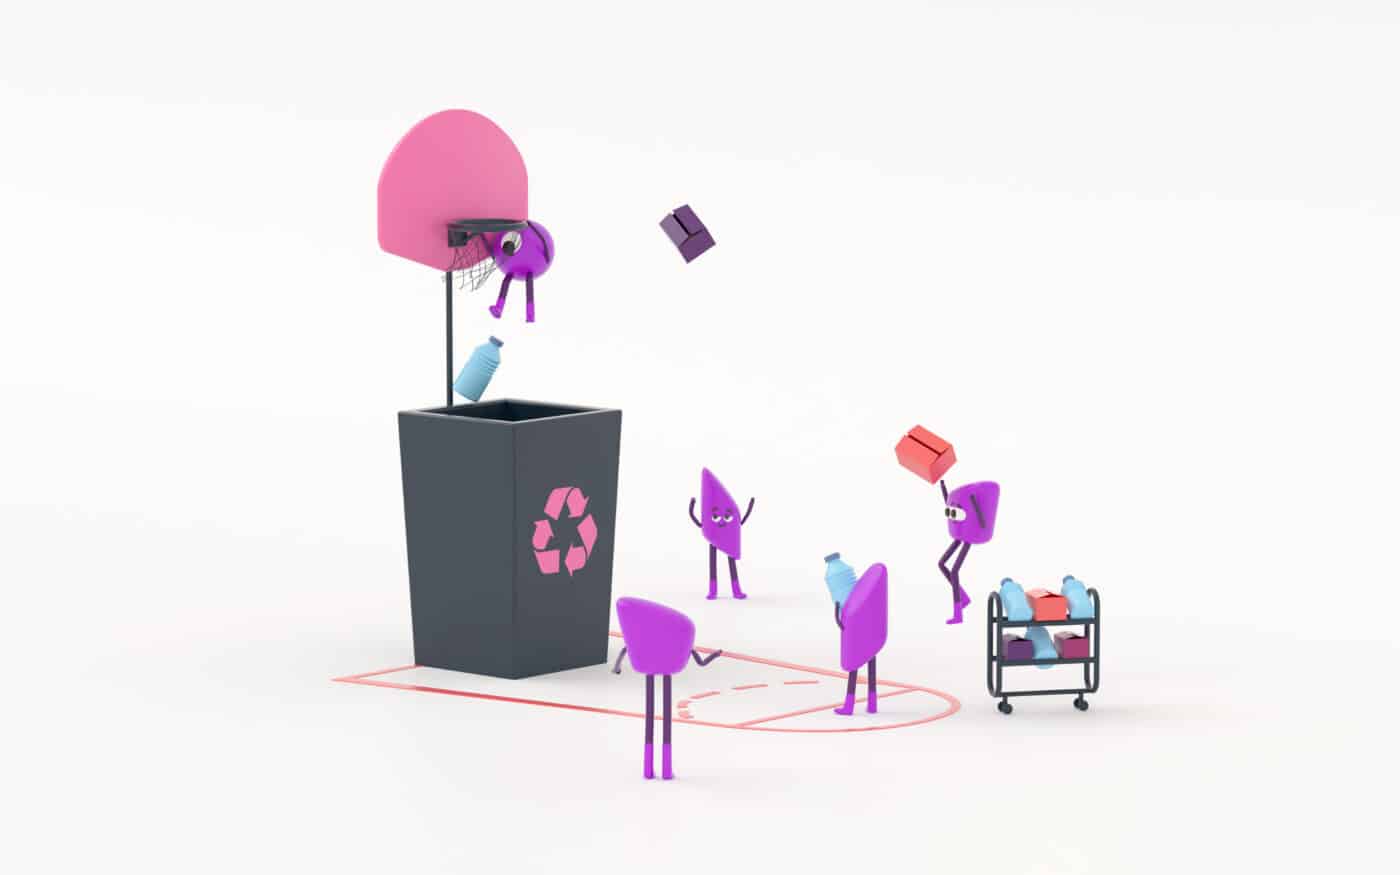 Des petits personnages 3D jouent au basket autour d’une corbeille de recyclage.